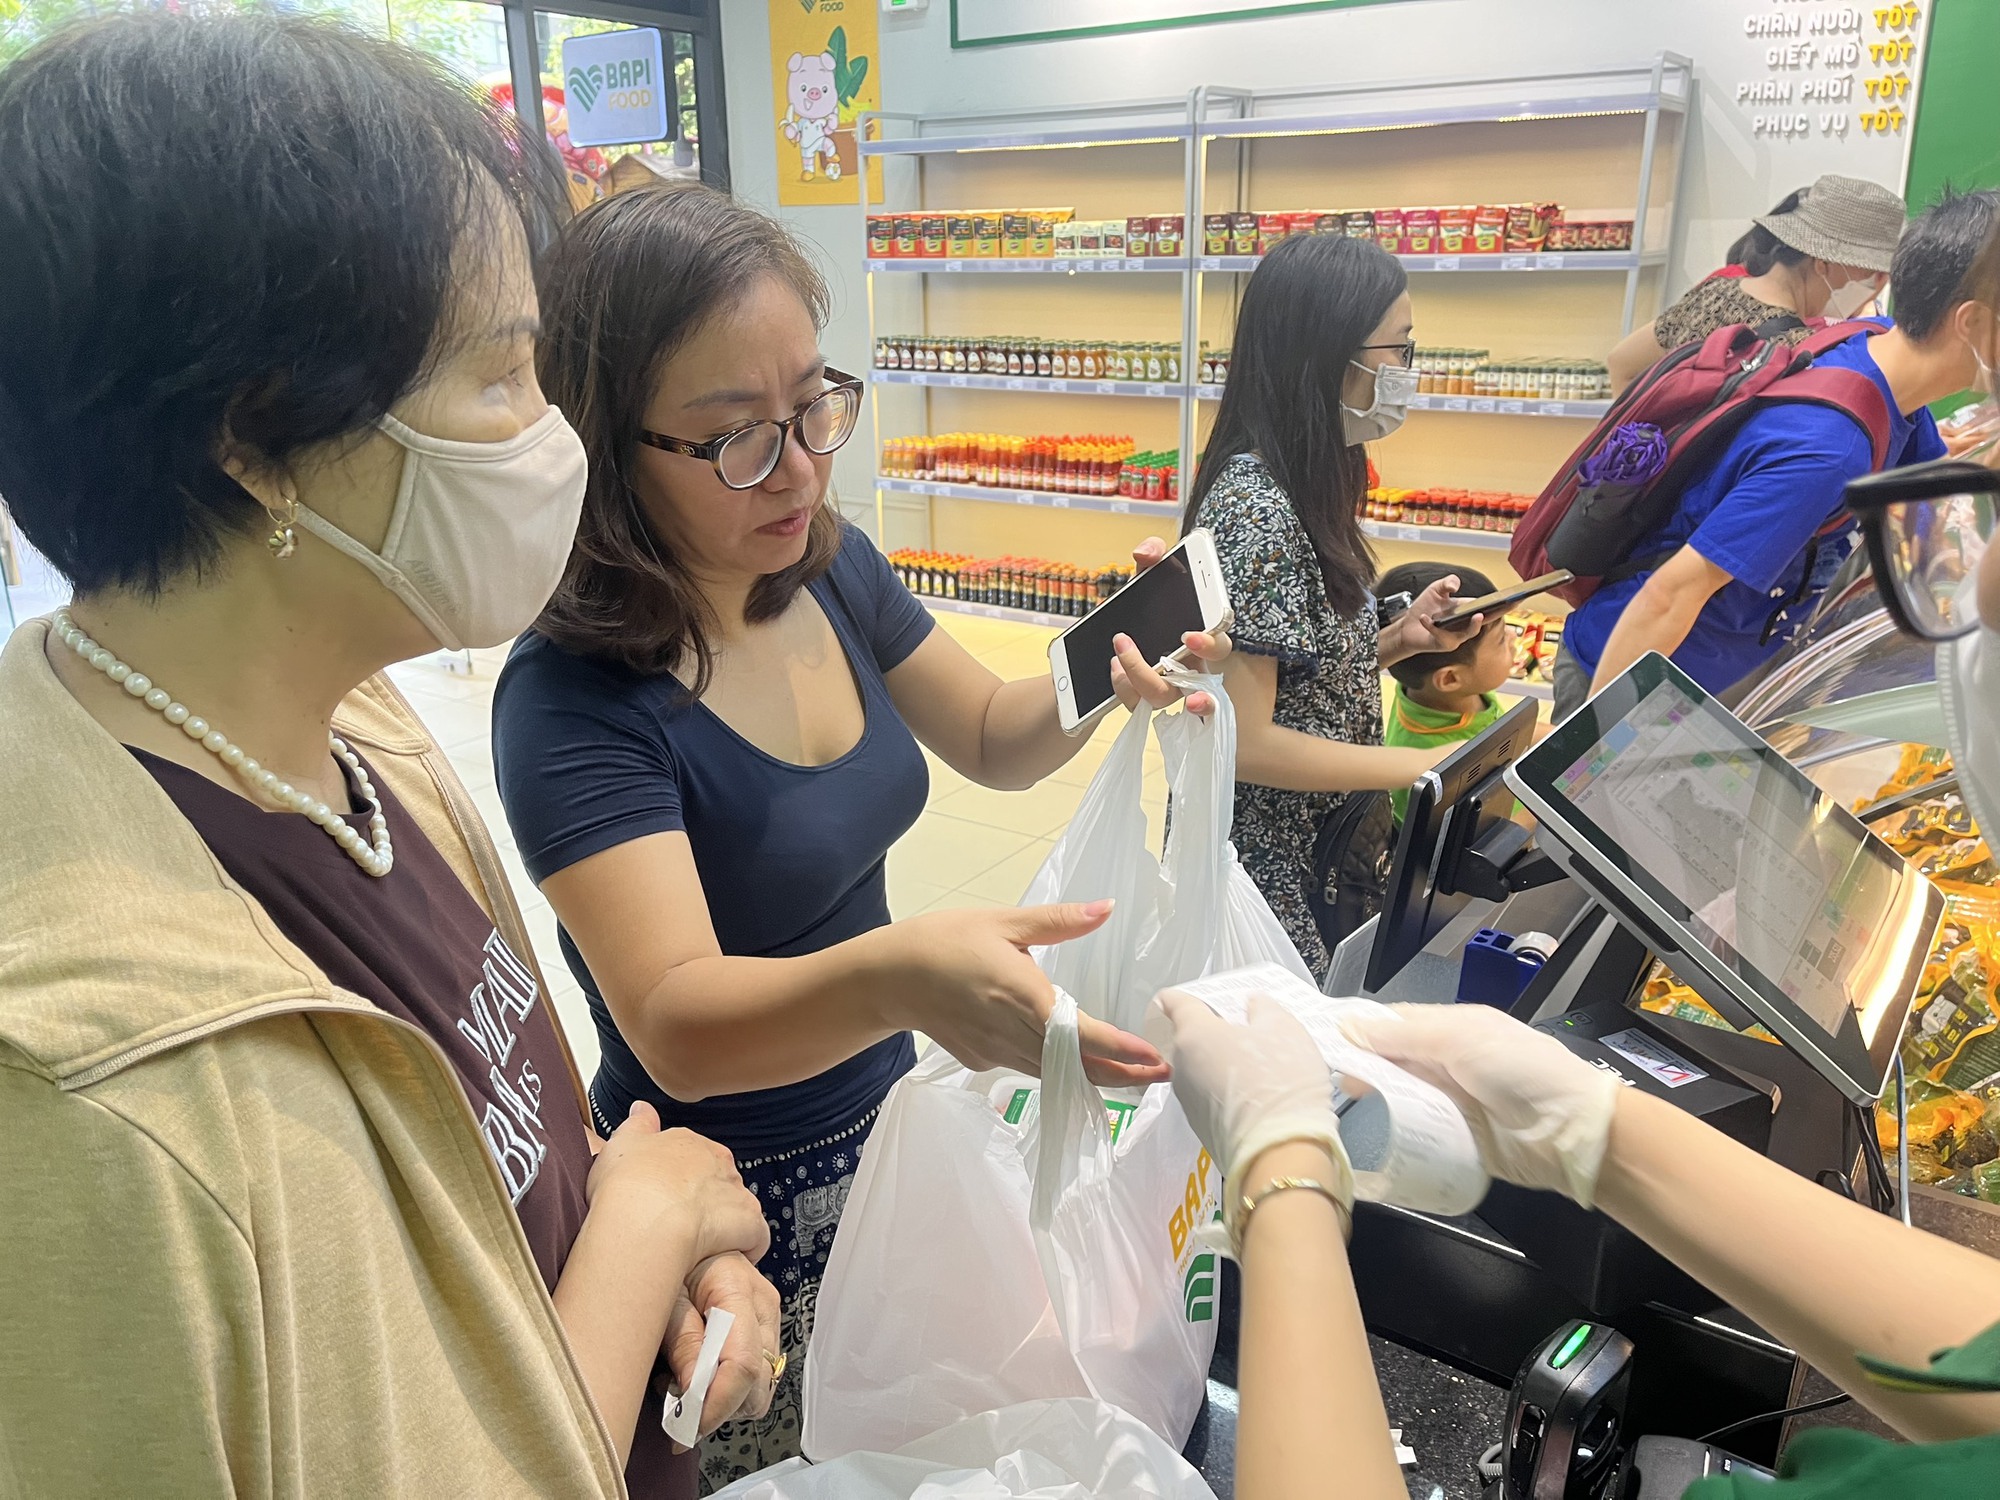 Bầu Đức mở cửa hàng thịt heo ăn chuối tại Hà Nội, chị em tíu tít xếp hàng mua hết veo - Ảnh 2.